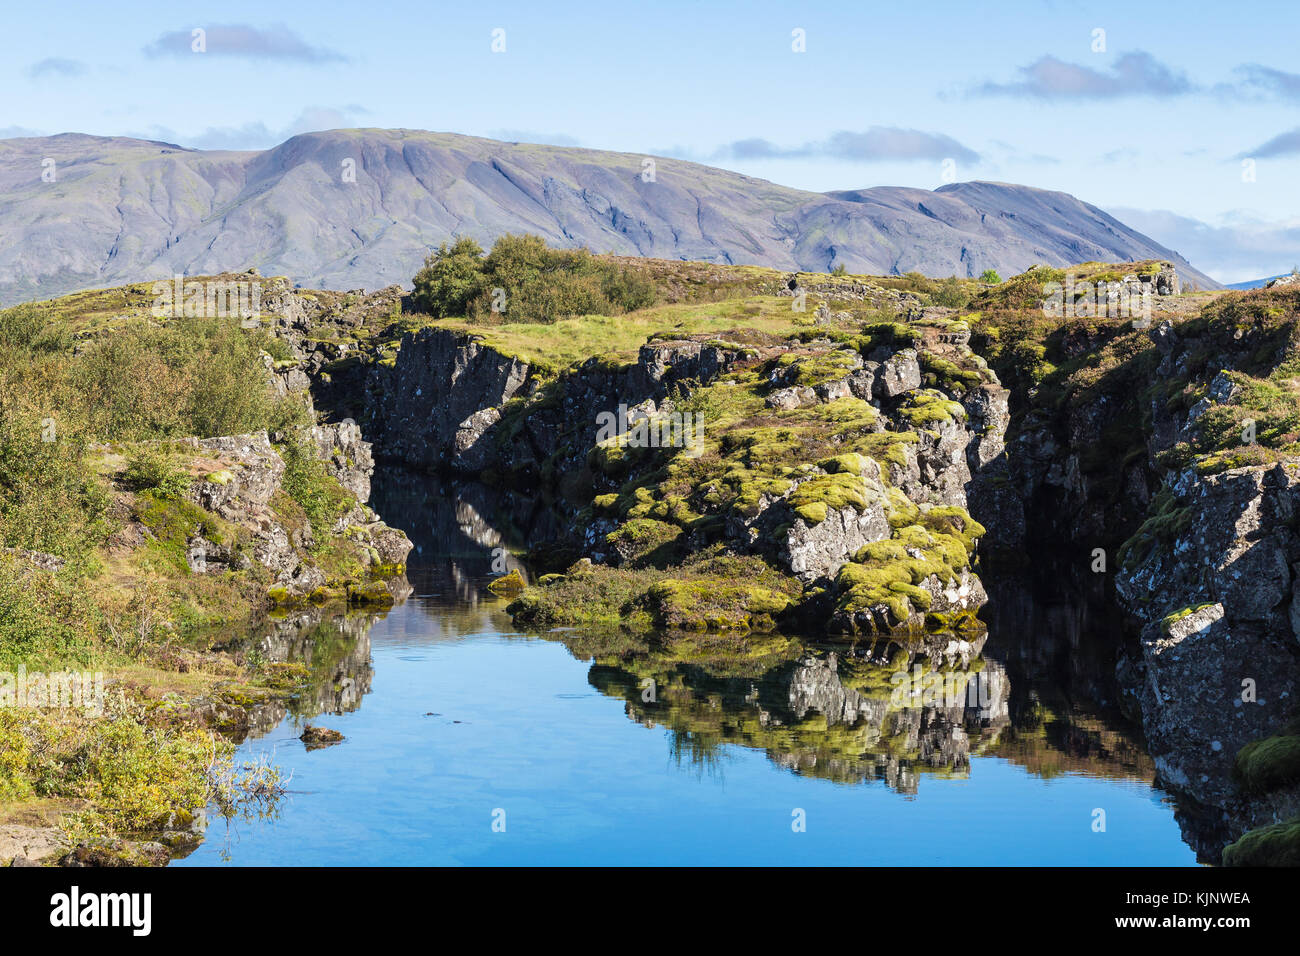 Voyager en Islande - vue de la vallée du rift de silfra s.p.a. dans le parc national de thingvellir en septembre Banque D'Images